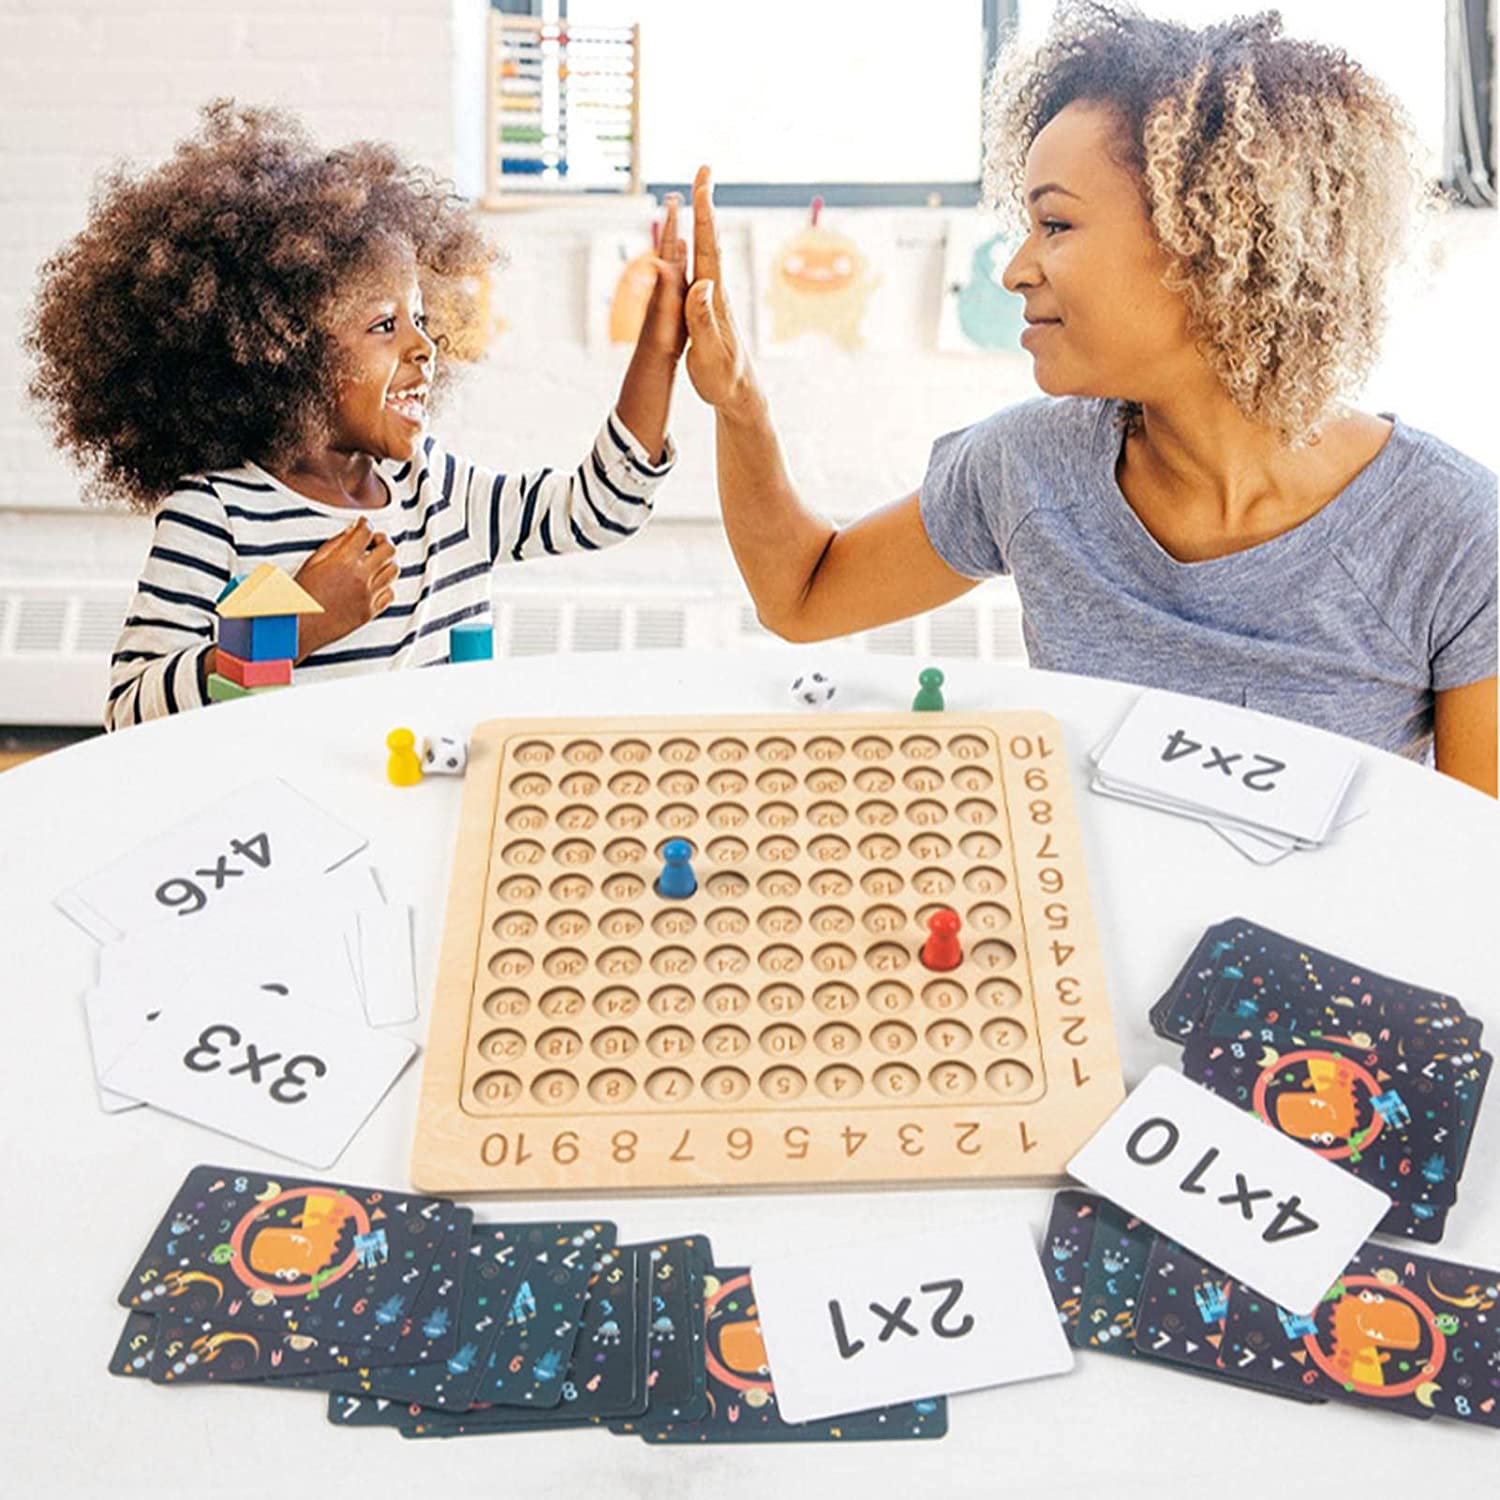 Jeu de société de multiplication, Fun Wooden Multiplication Board Game -  Jeux de société éducatifs pour les tout-petits de plus de 3 ans